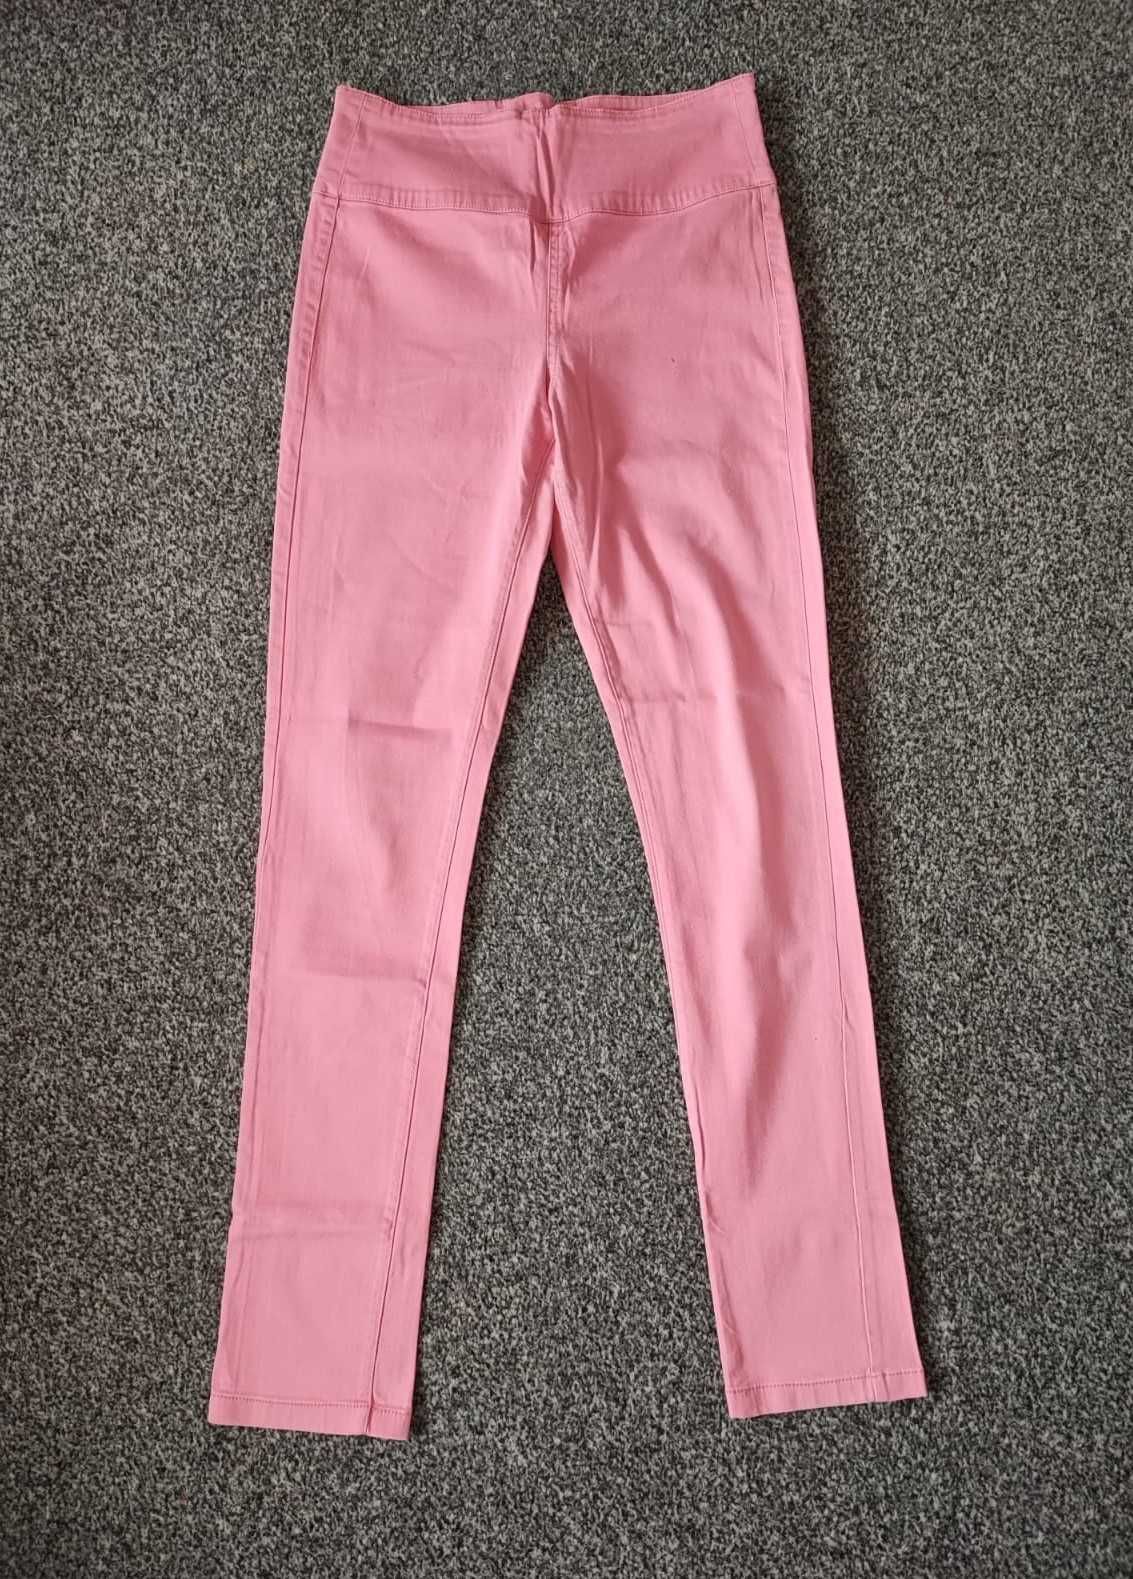 r. 38/40 M/L spodnie a'la jeans z elastyną, wysoki stan